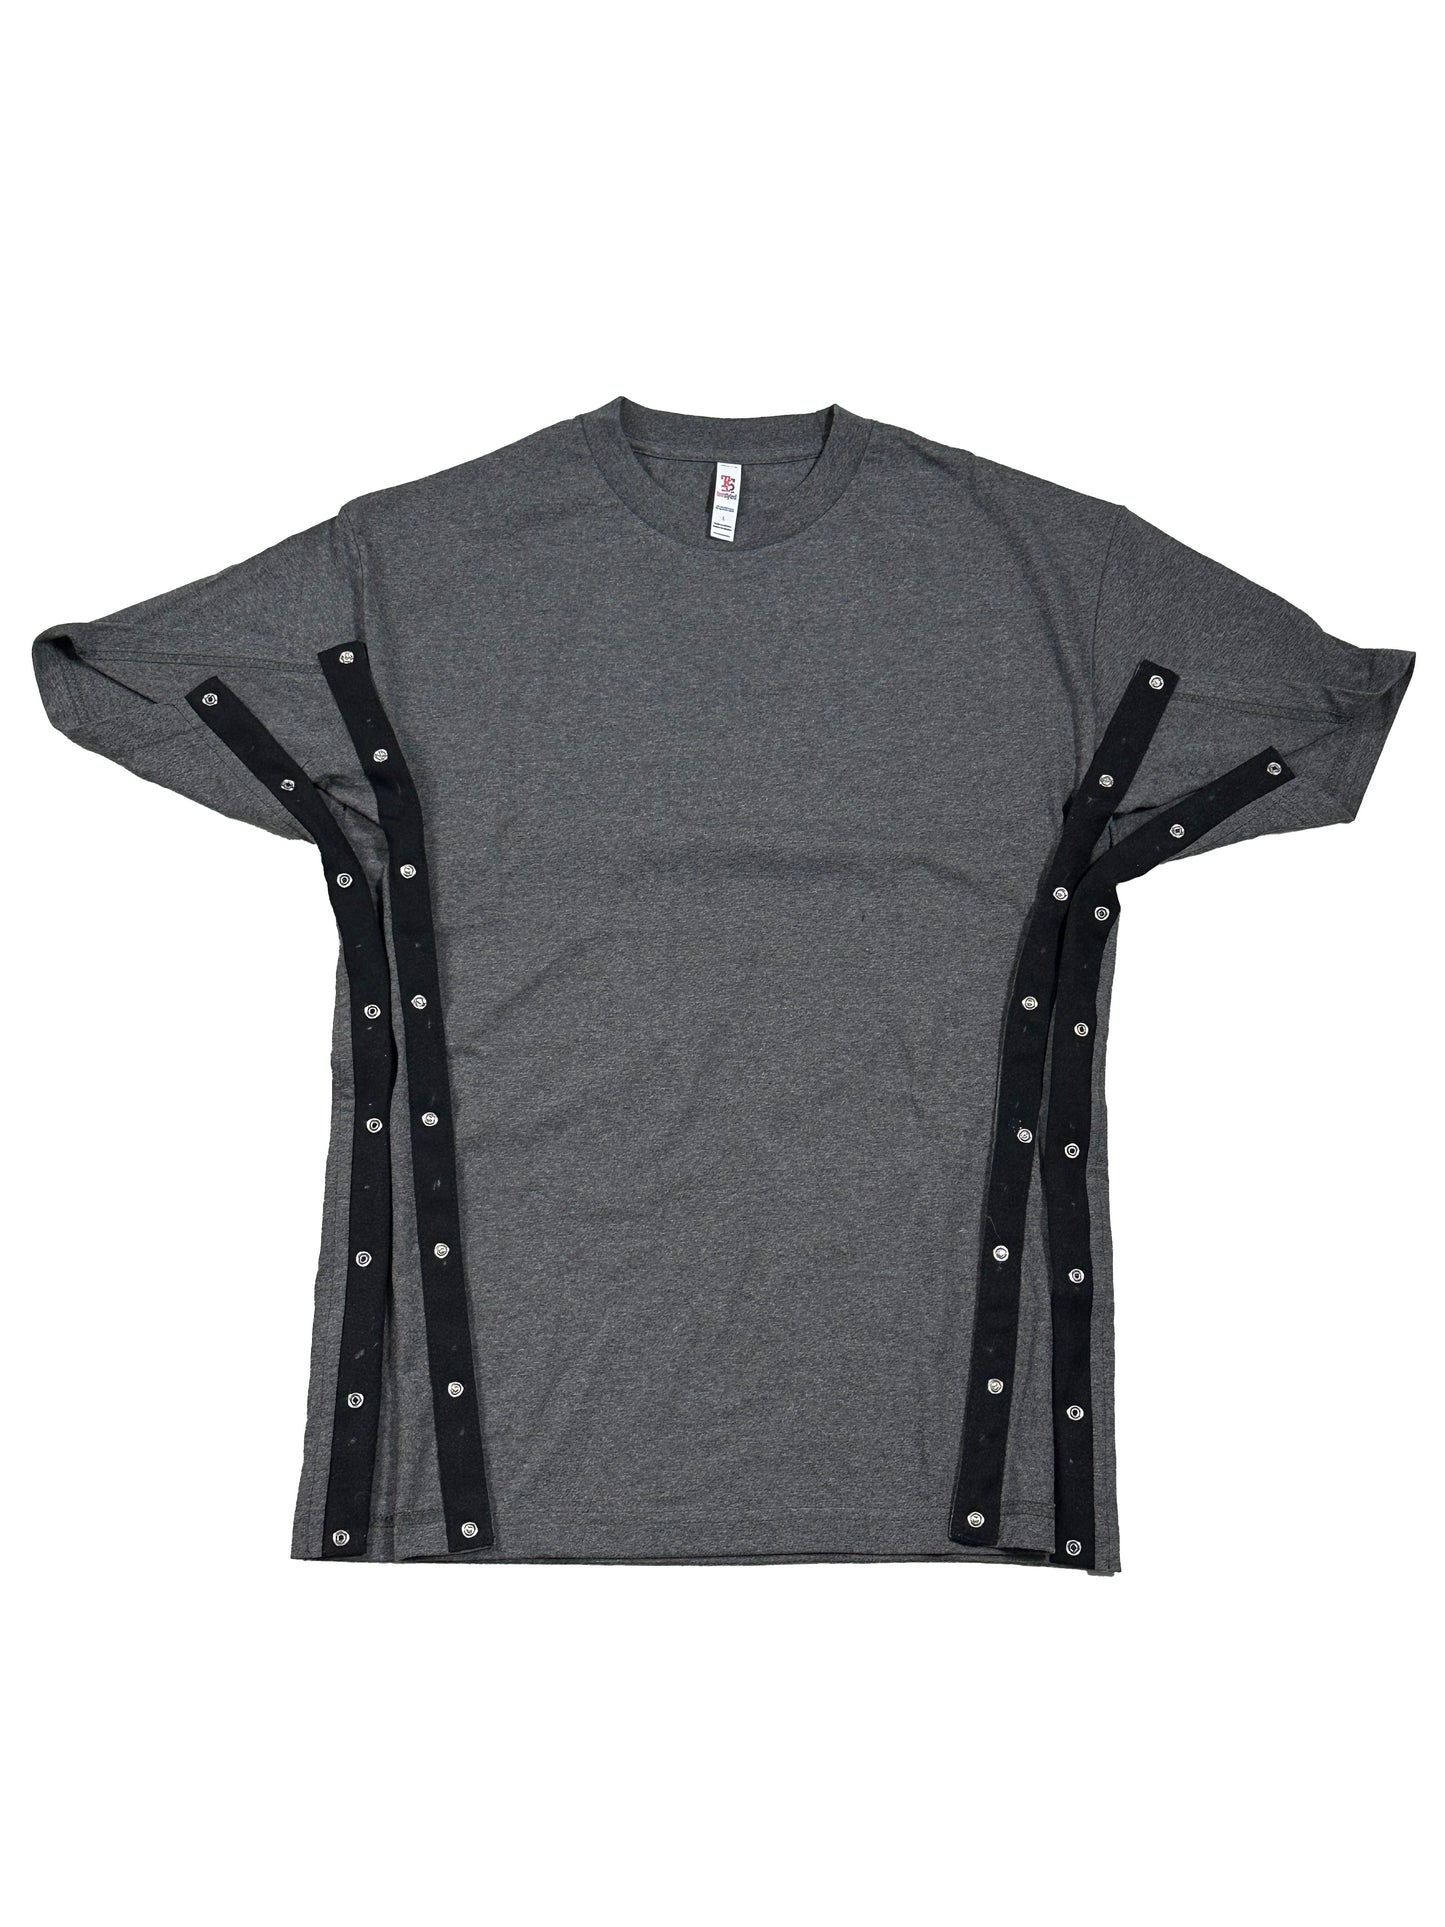 SPECIAL ORDER ** Side or Shoulder Snap Shirt (4XL or larger)